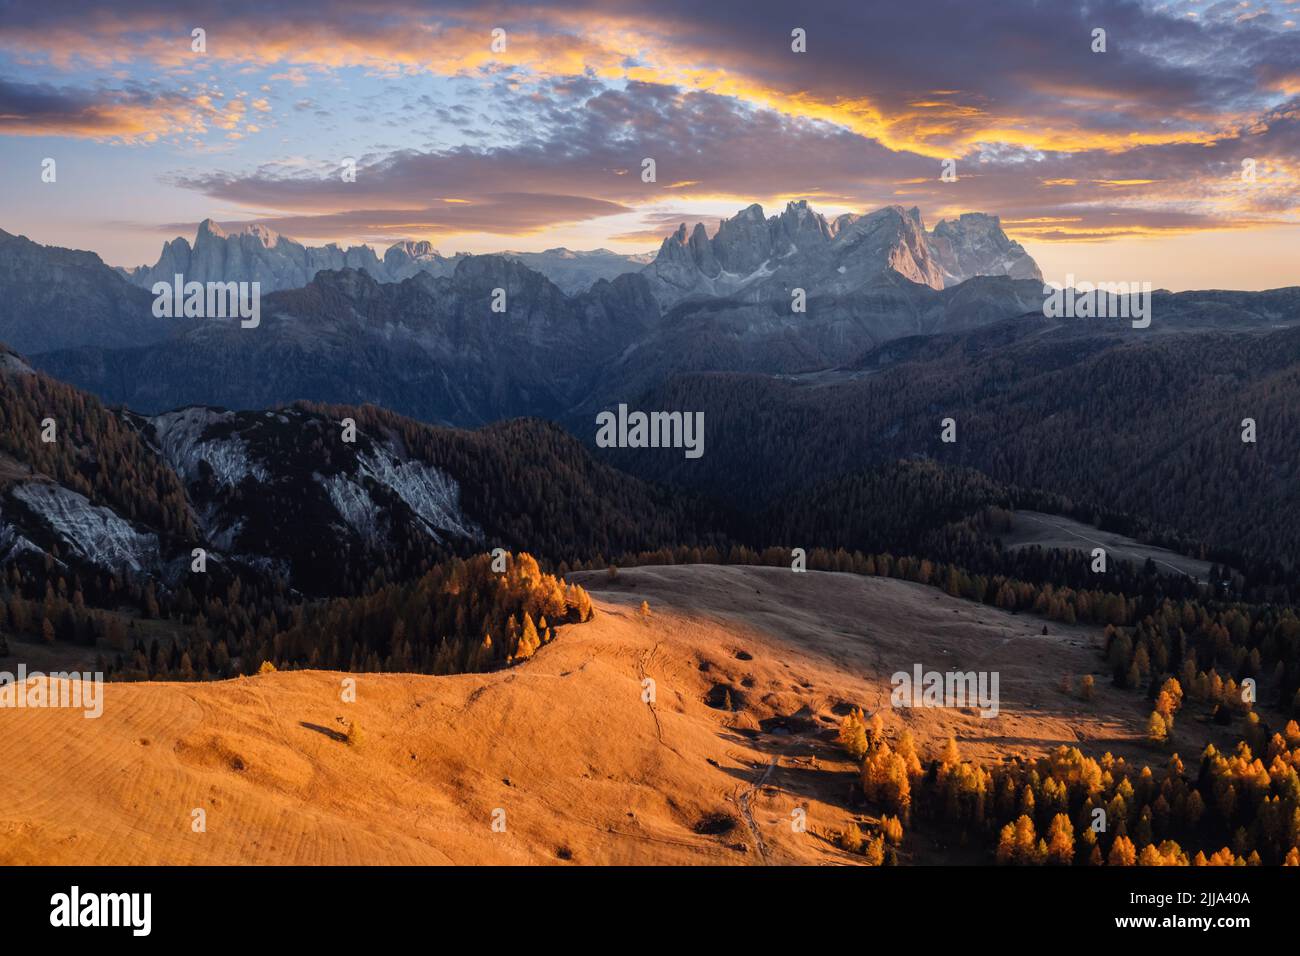 Unglaublicher Herbstblick im Valfreda-Tal in den italienischen Dolomiten. Gelbes Gras, orange Lärchen Wald und schneebedeckte Berge Gipfel auf dem Hintergrund. Dolomiten, Italien. Landschaftsfotografie Stockfoto